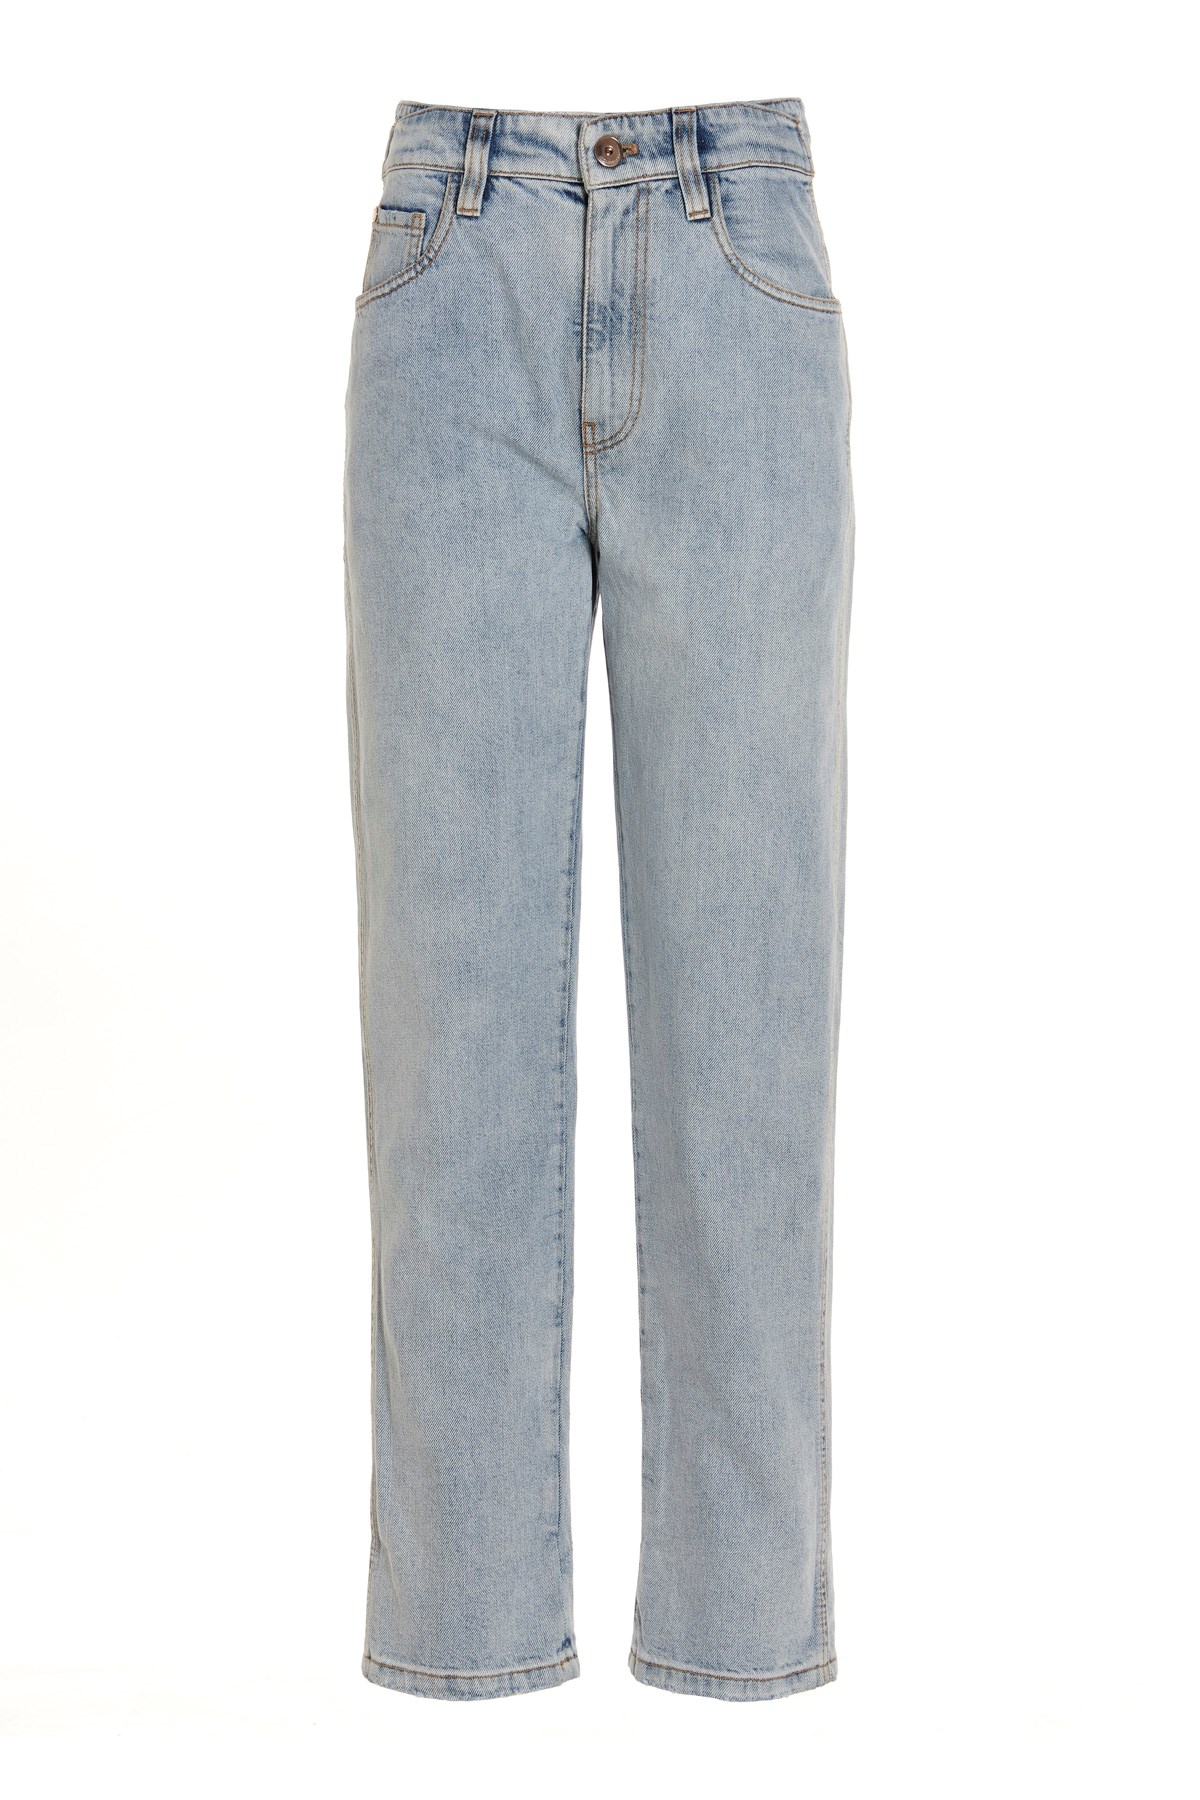 BRUNELLO CUCINELLI High Waist Jeans